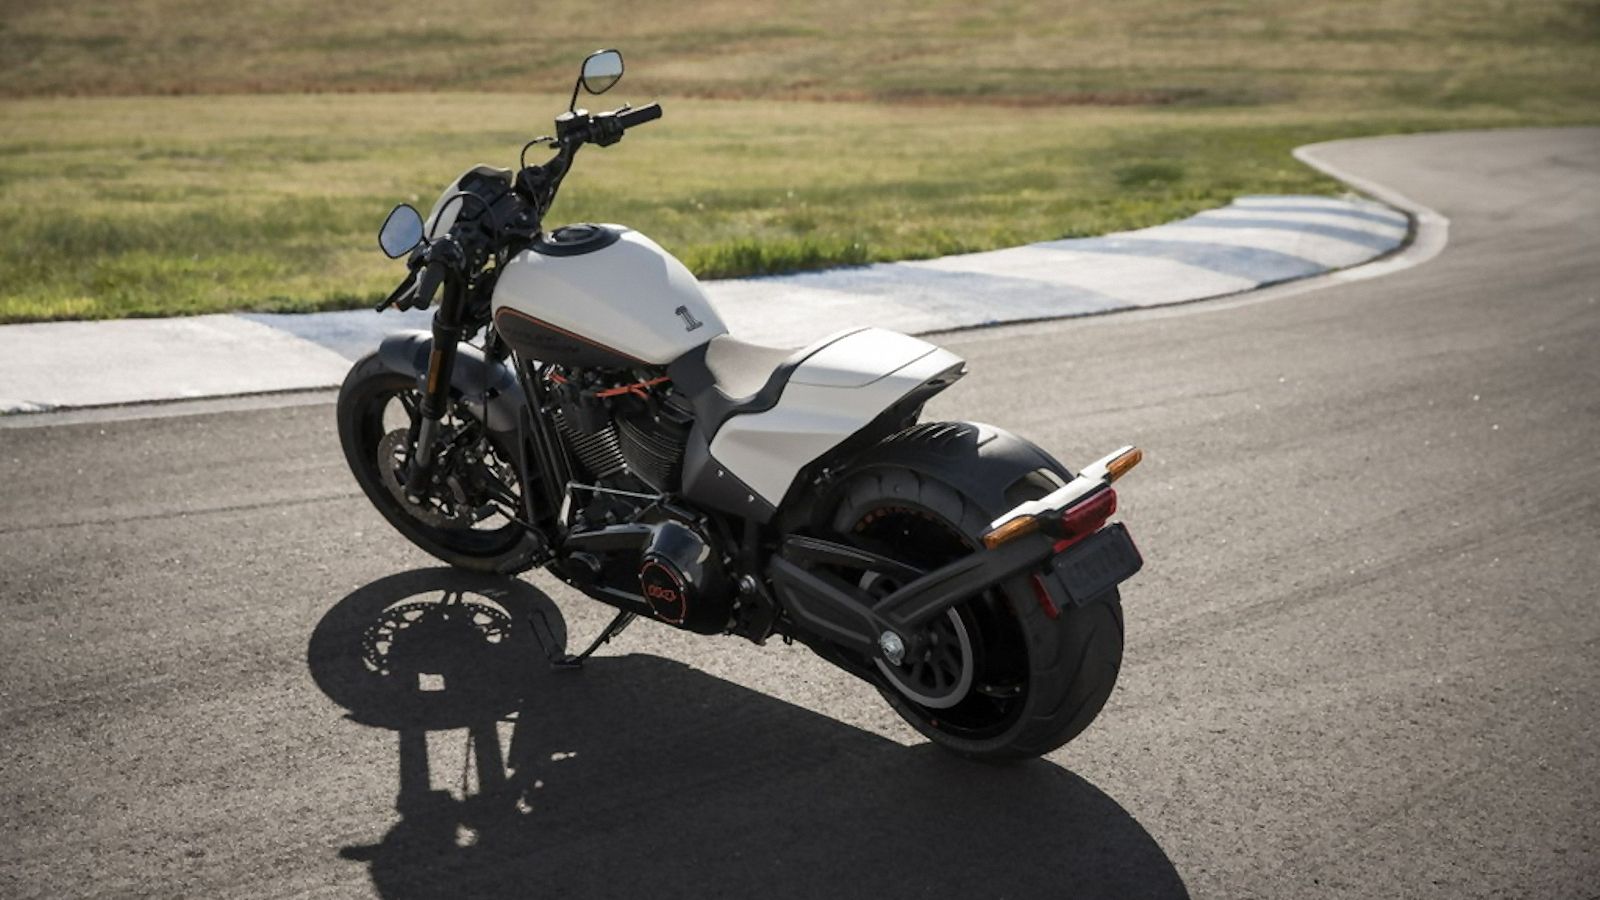 2019 - 2020 Harley-Davidson FXDR 114